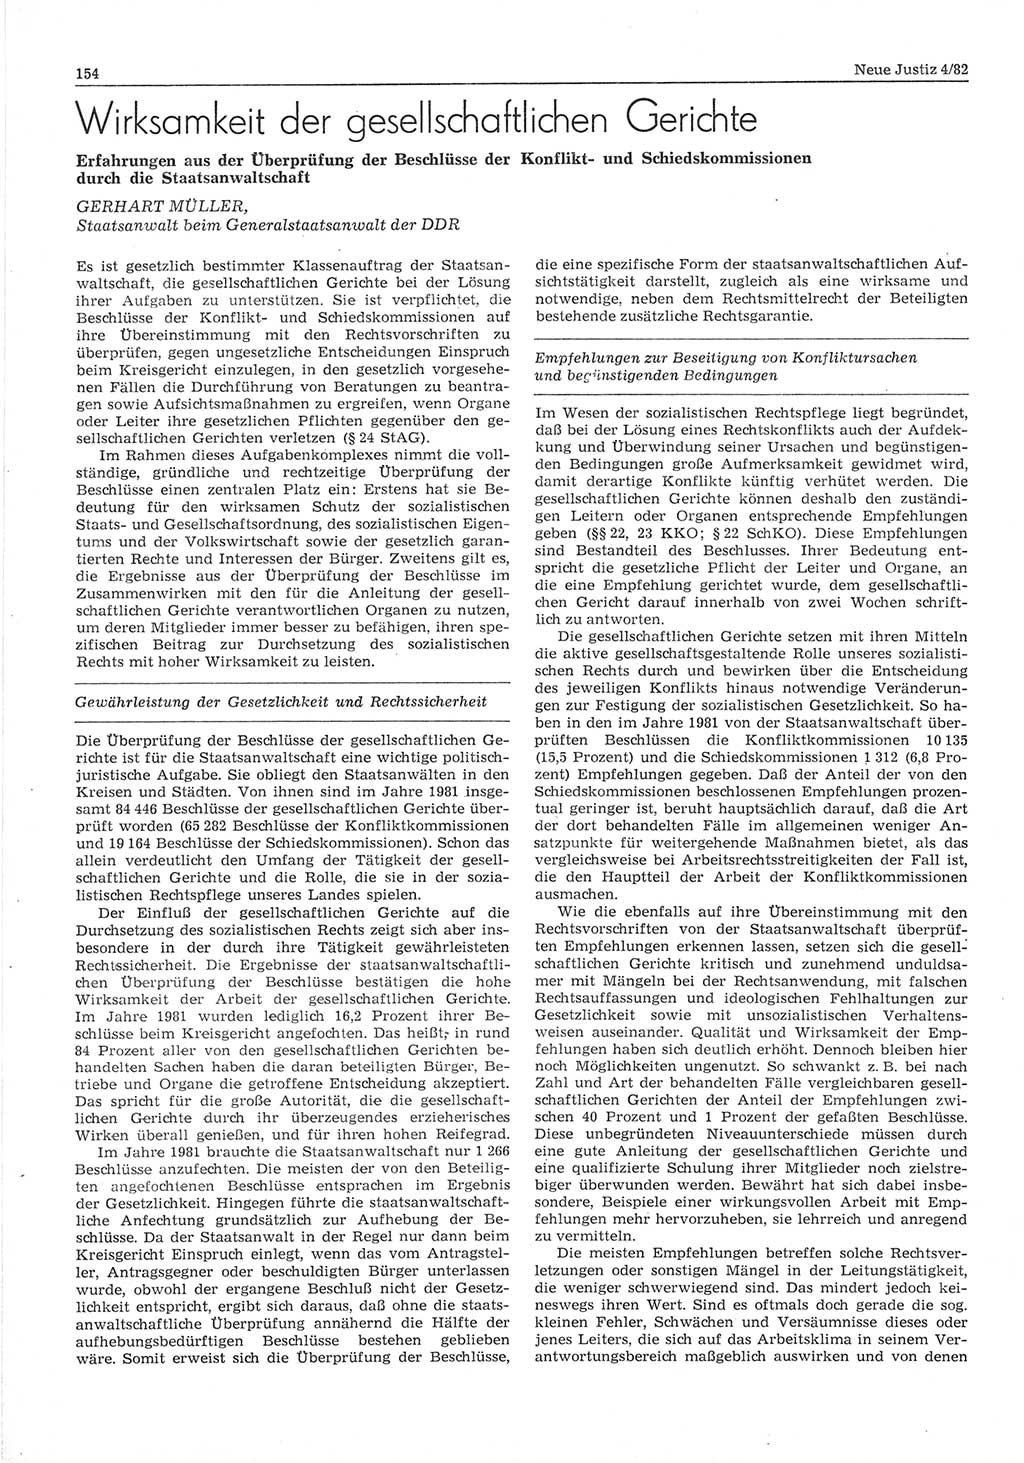 Neue Justiz (NJ), Zeitschrift für sozialistisches Recht und Gesetzlichkeit [Deutsche Demokratische Republik (DDR)], 36. Jahrgang 1982, Seite 154 (NJ DDR 1982, S. 154)